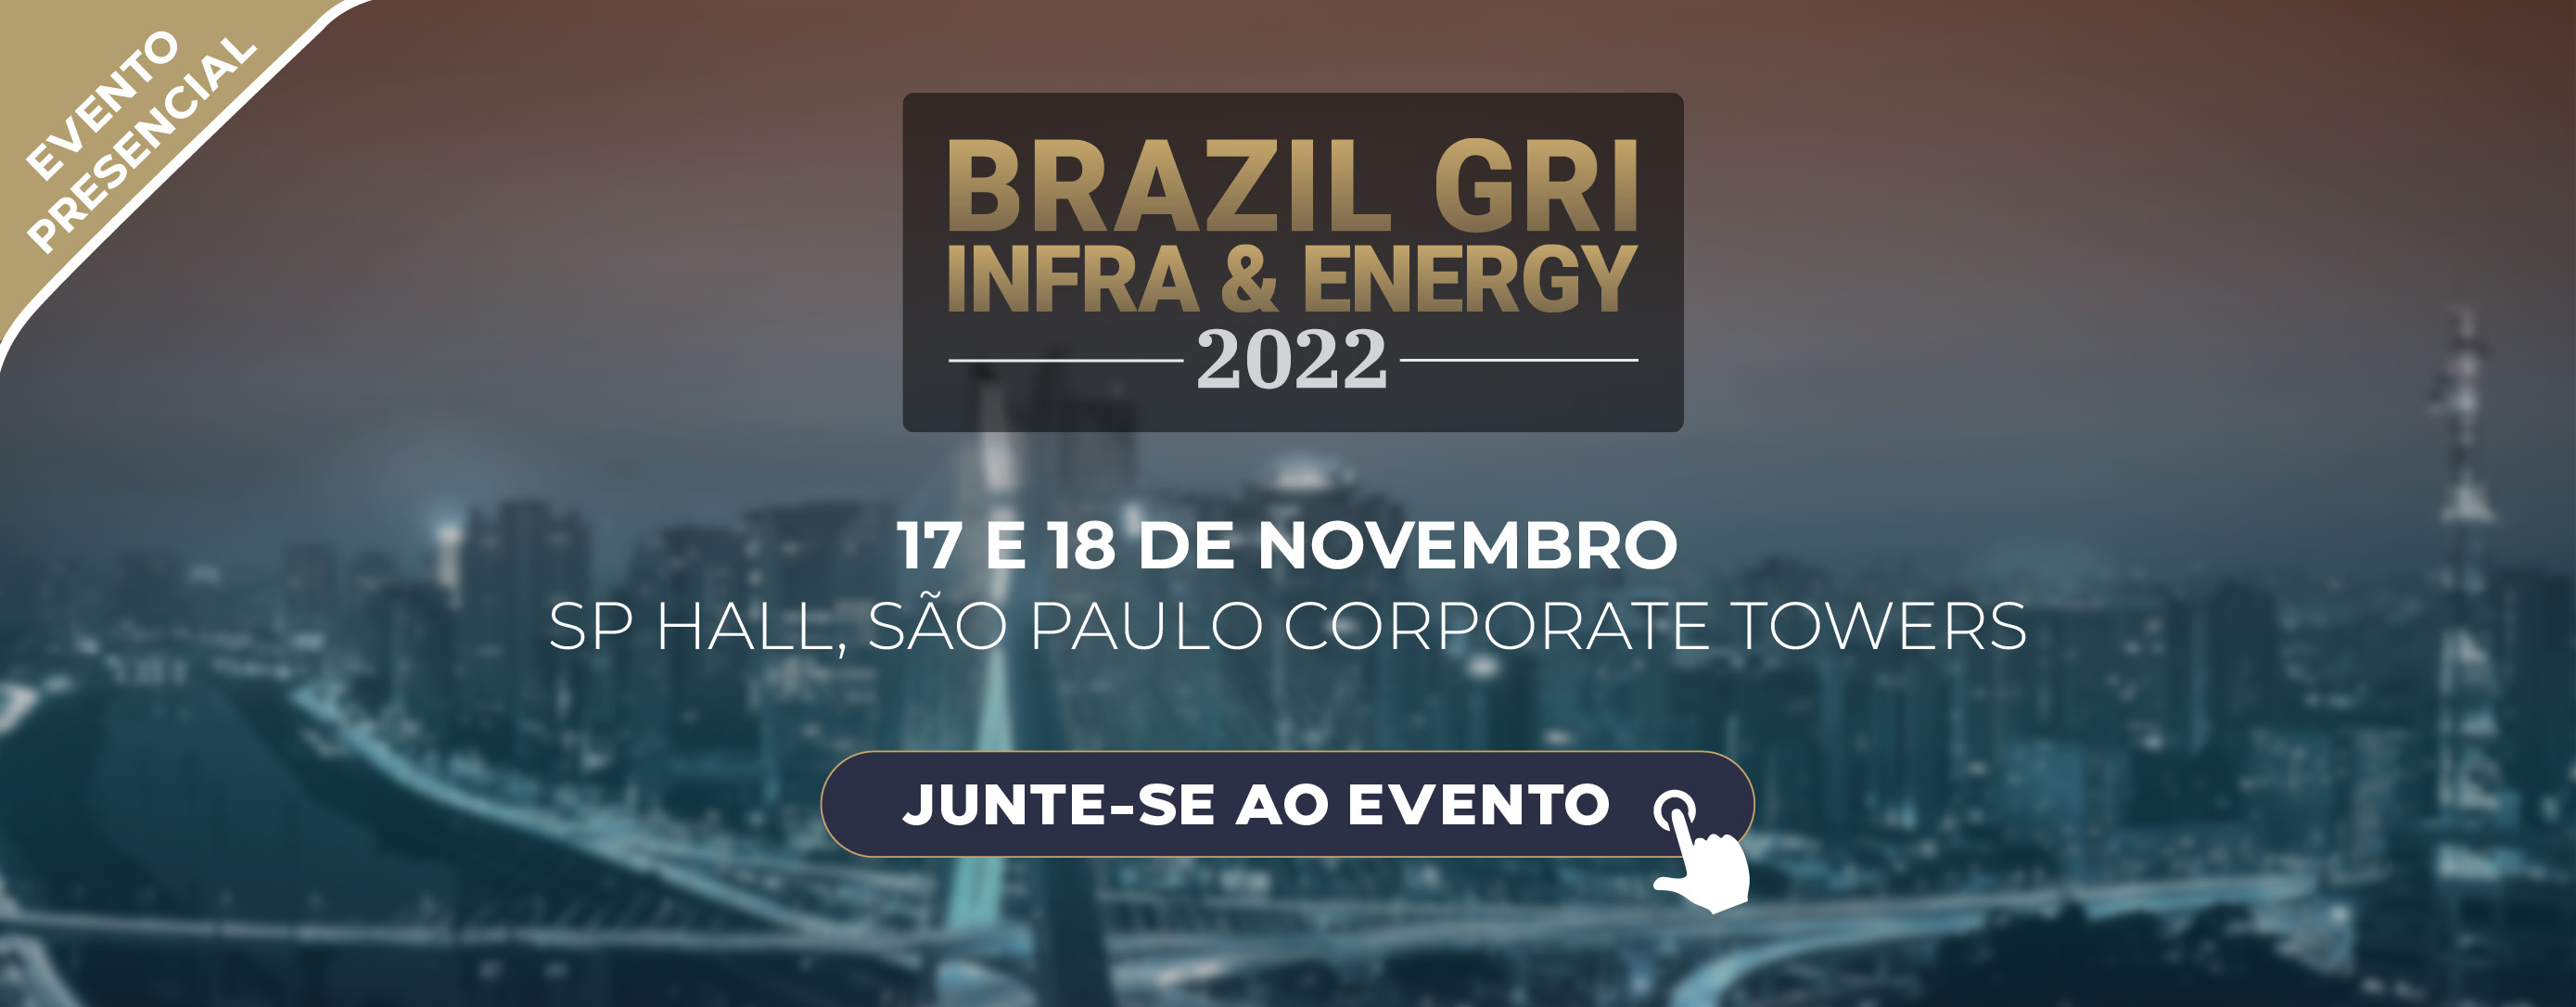 Brazil GRI Infra & Energy 2022